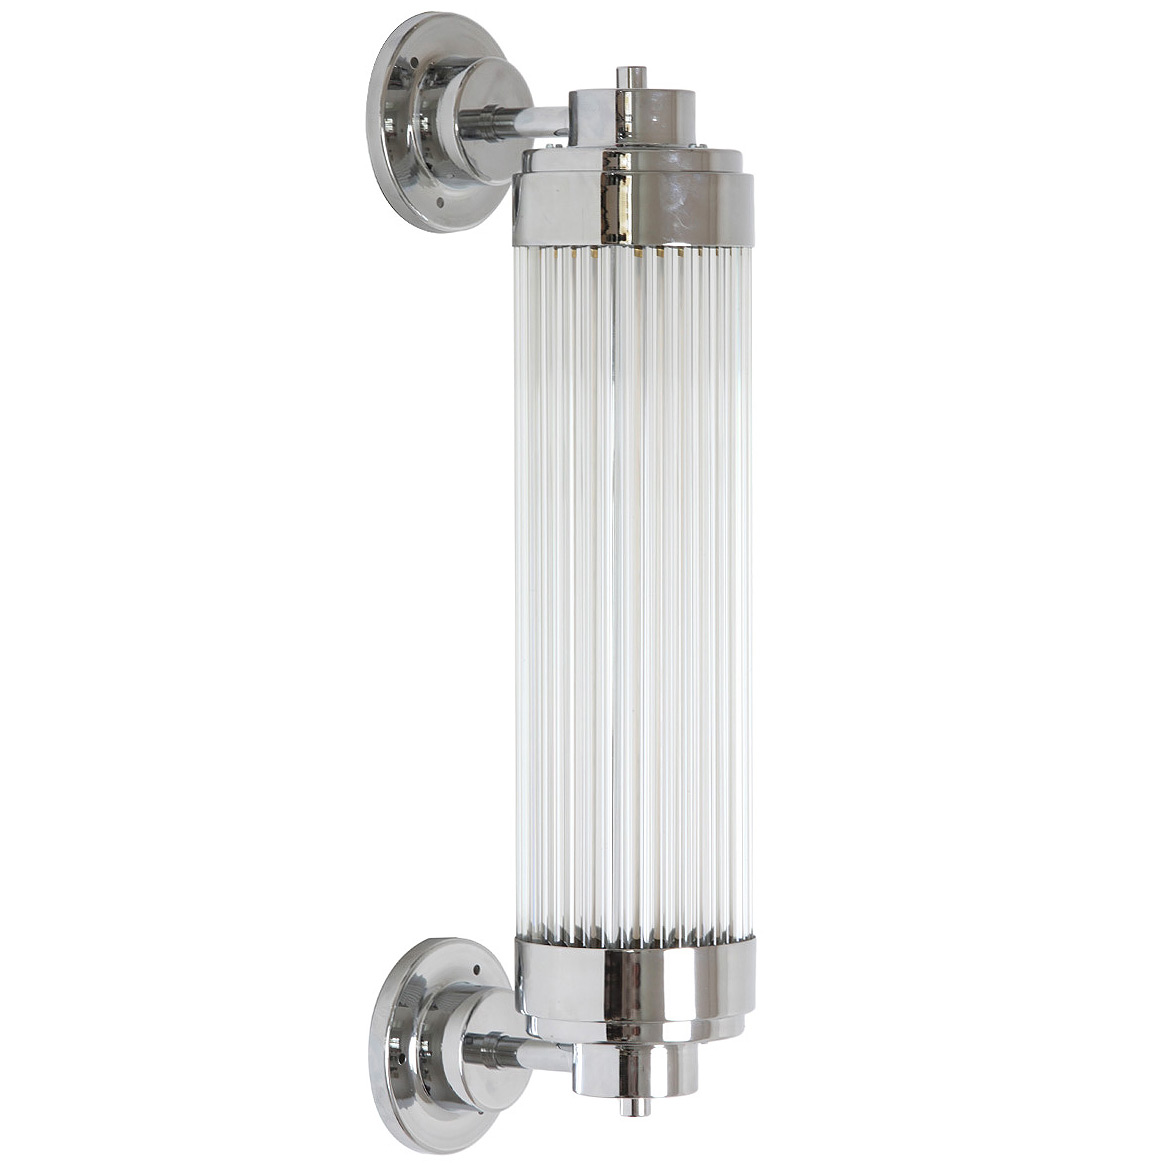 Exklusive LED-Wandleuchte, ideal für Badezimmer-Spiegel: Exklusive Art déco-Wandleuchte mit LED-Technik, dimmbar, Messing verchromt